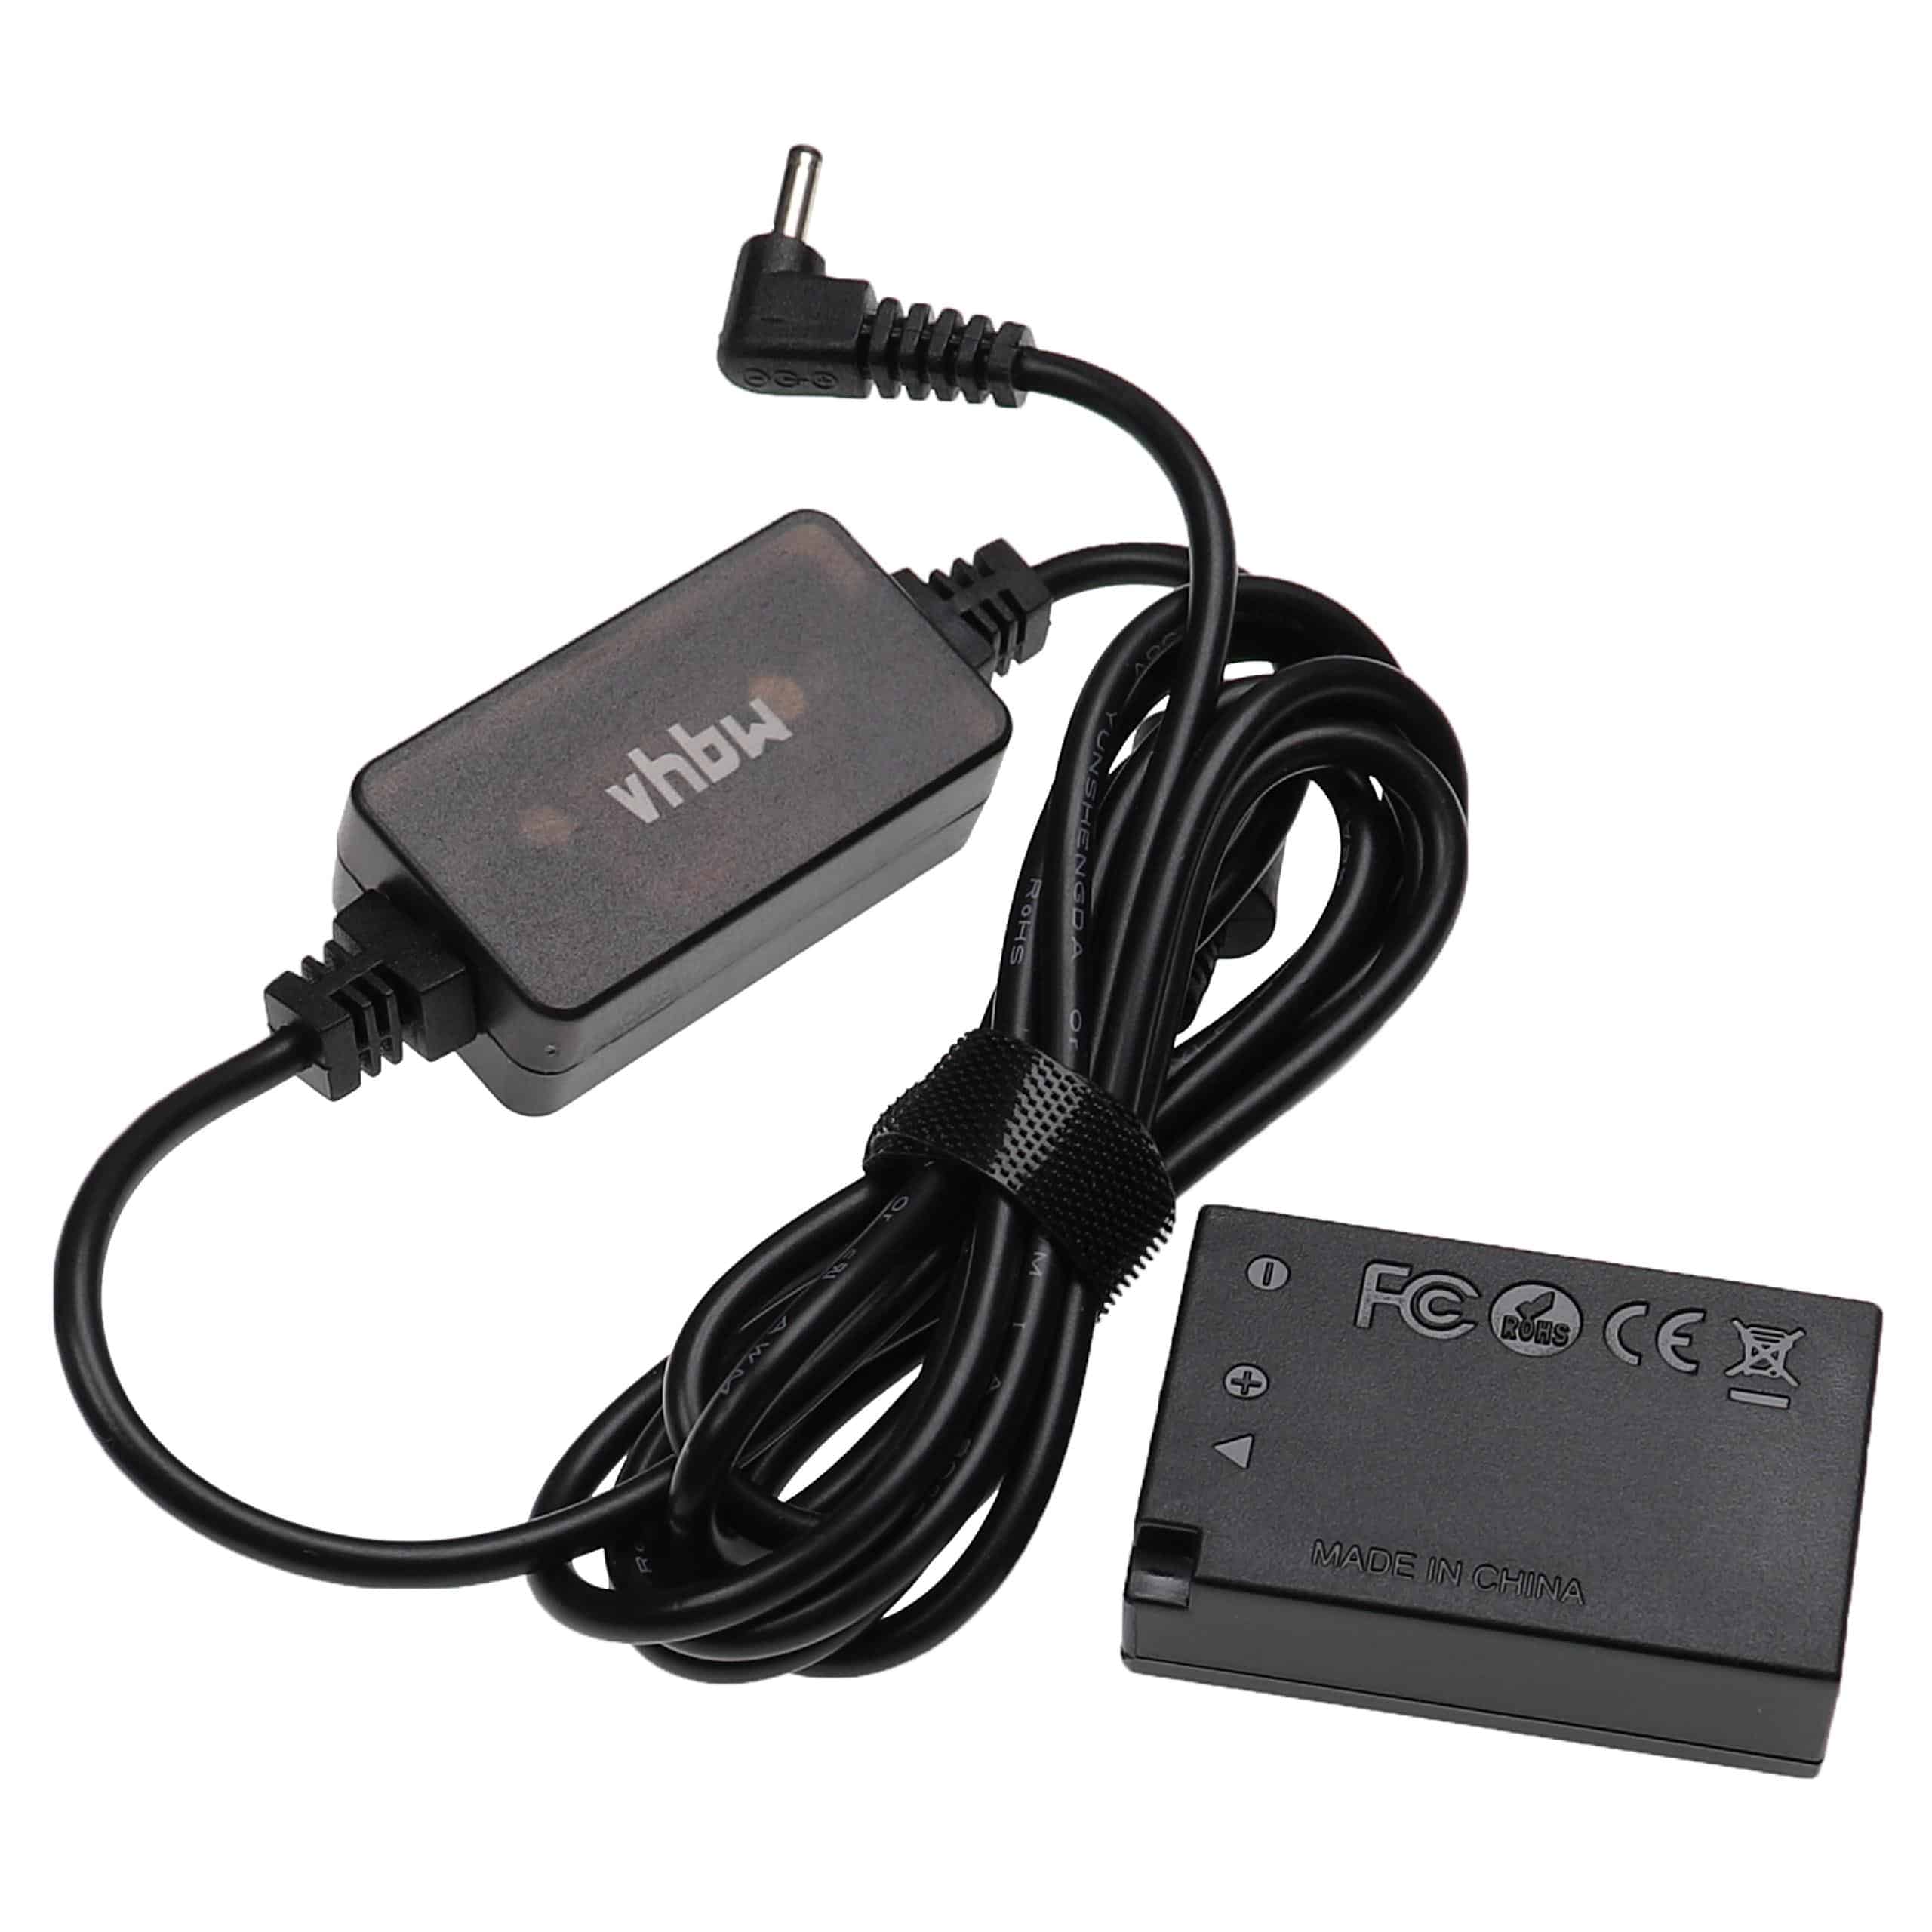 USB Power Supply replaces ACK-E17 for Camera + DC Coupler as Canon DR-E17 - 2 m, 8.4 V 3.0 A